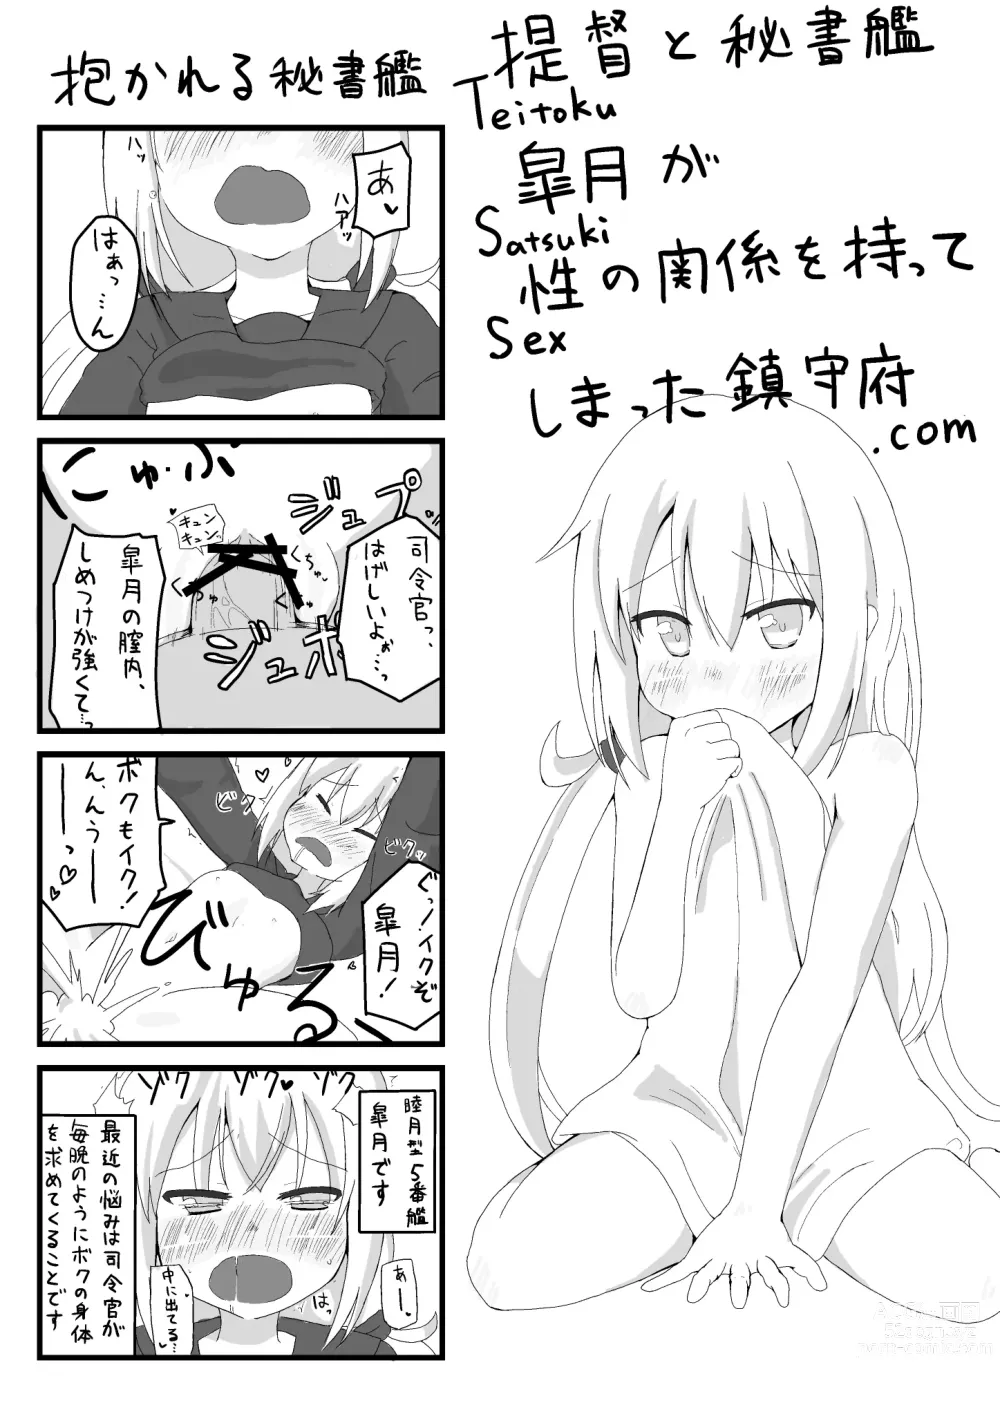 Page 1 of doujinshi Teitoku to Hishokan Satsuki ga Sex no Kankei o Motte Shimatta Chinjufu.com